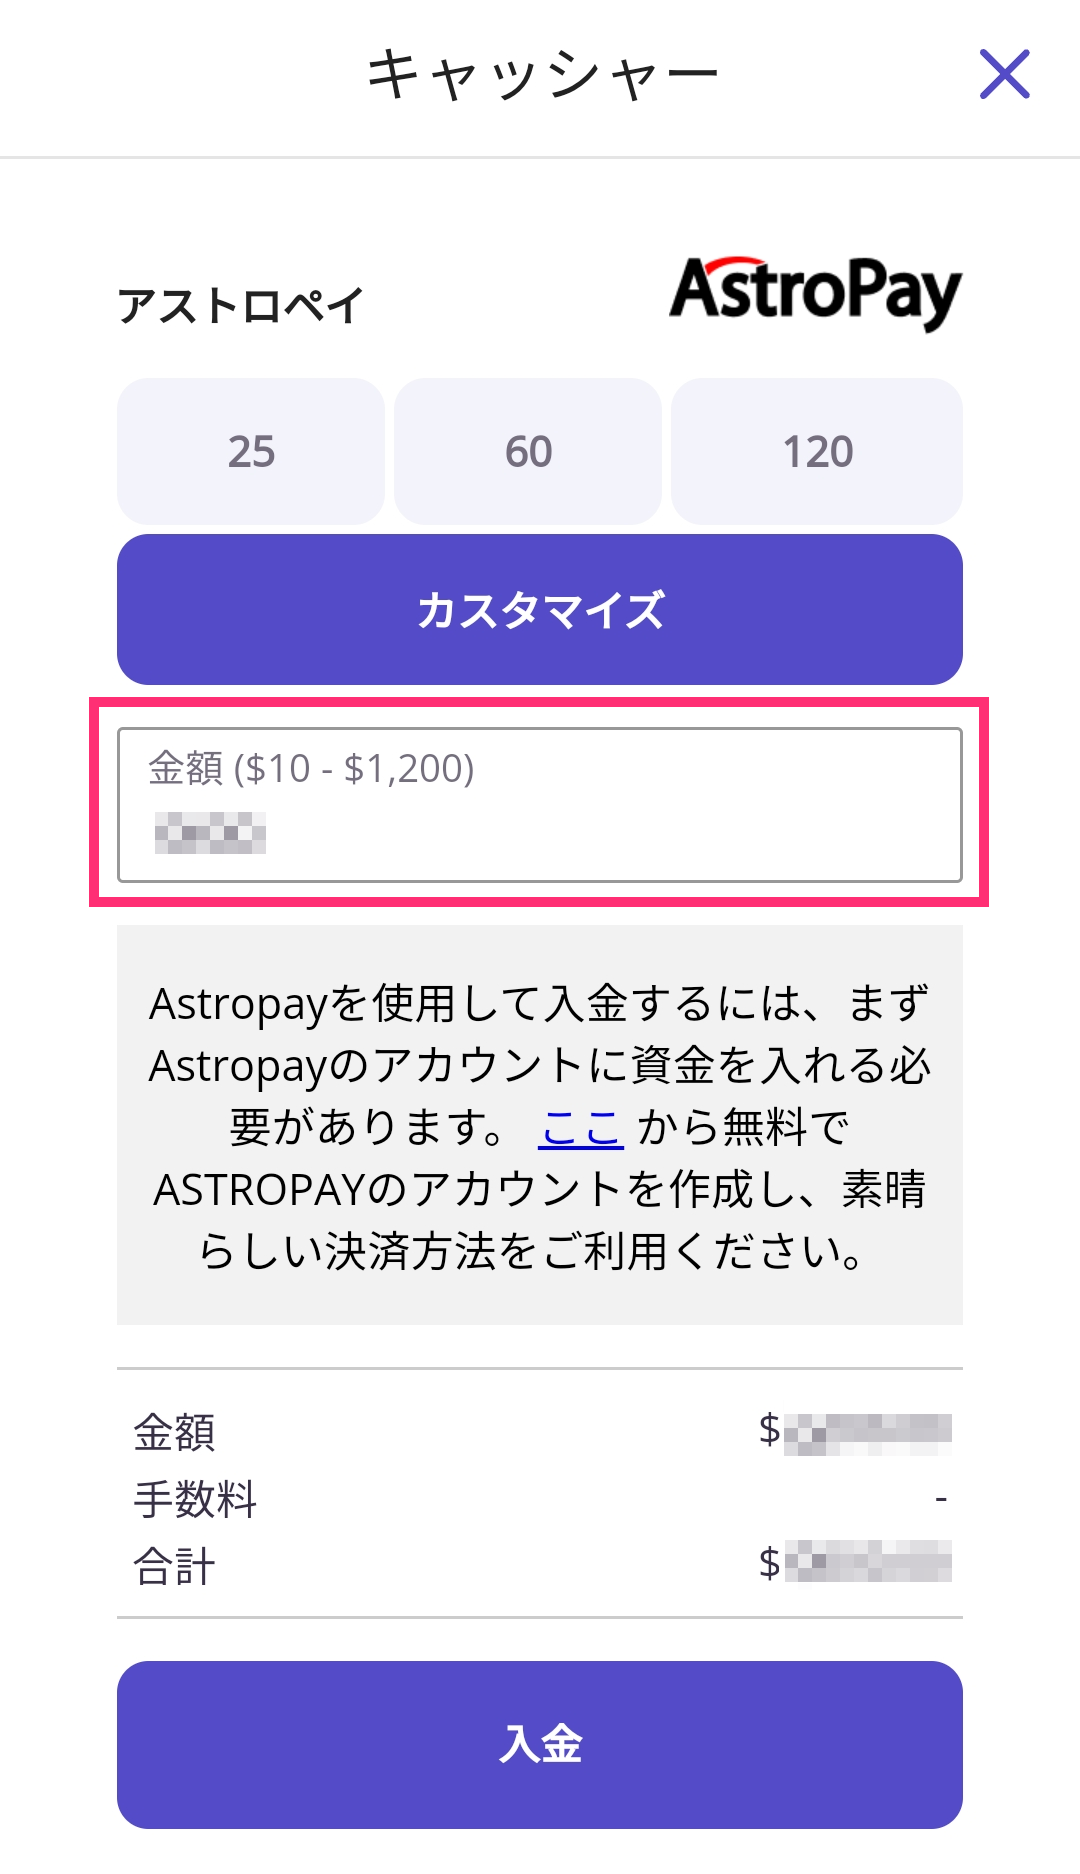 【カジノデイズ】アストロペイ（Astropay）入出金｜限度額や注意点を徹底解説！